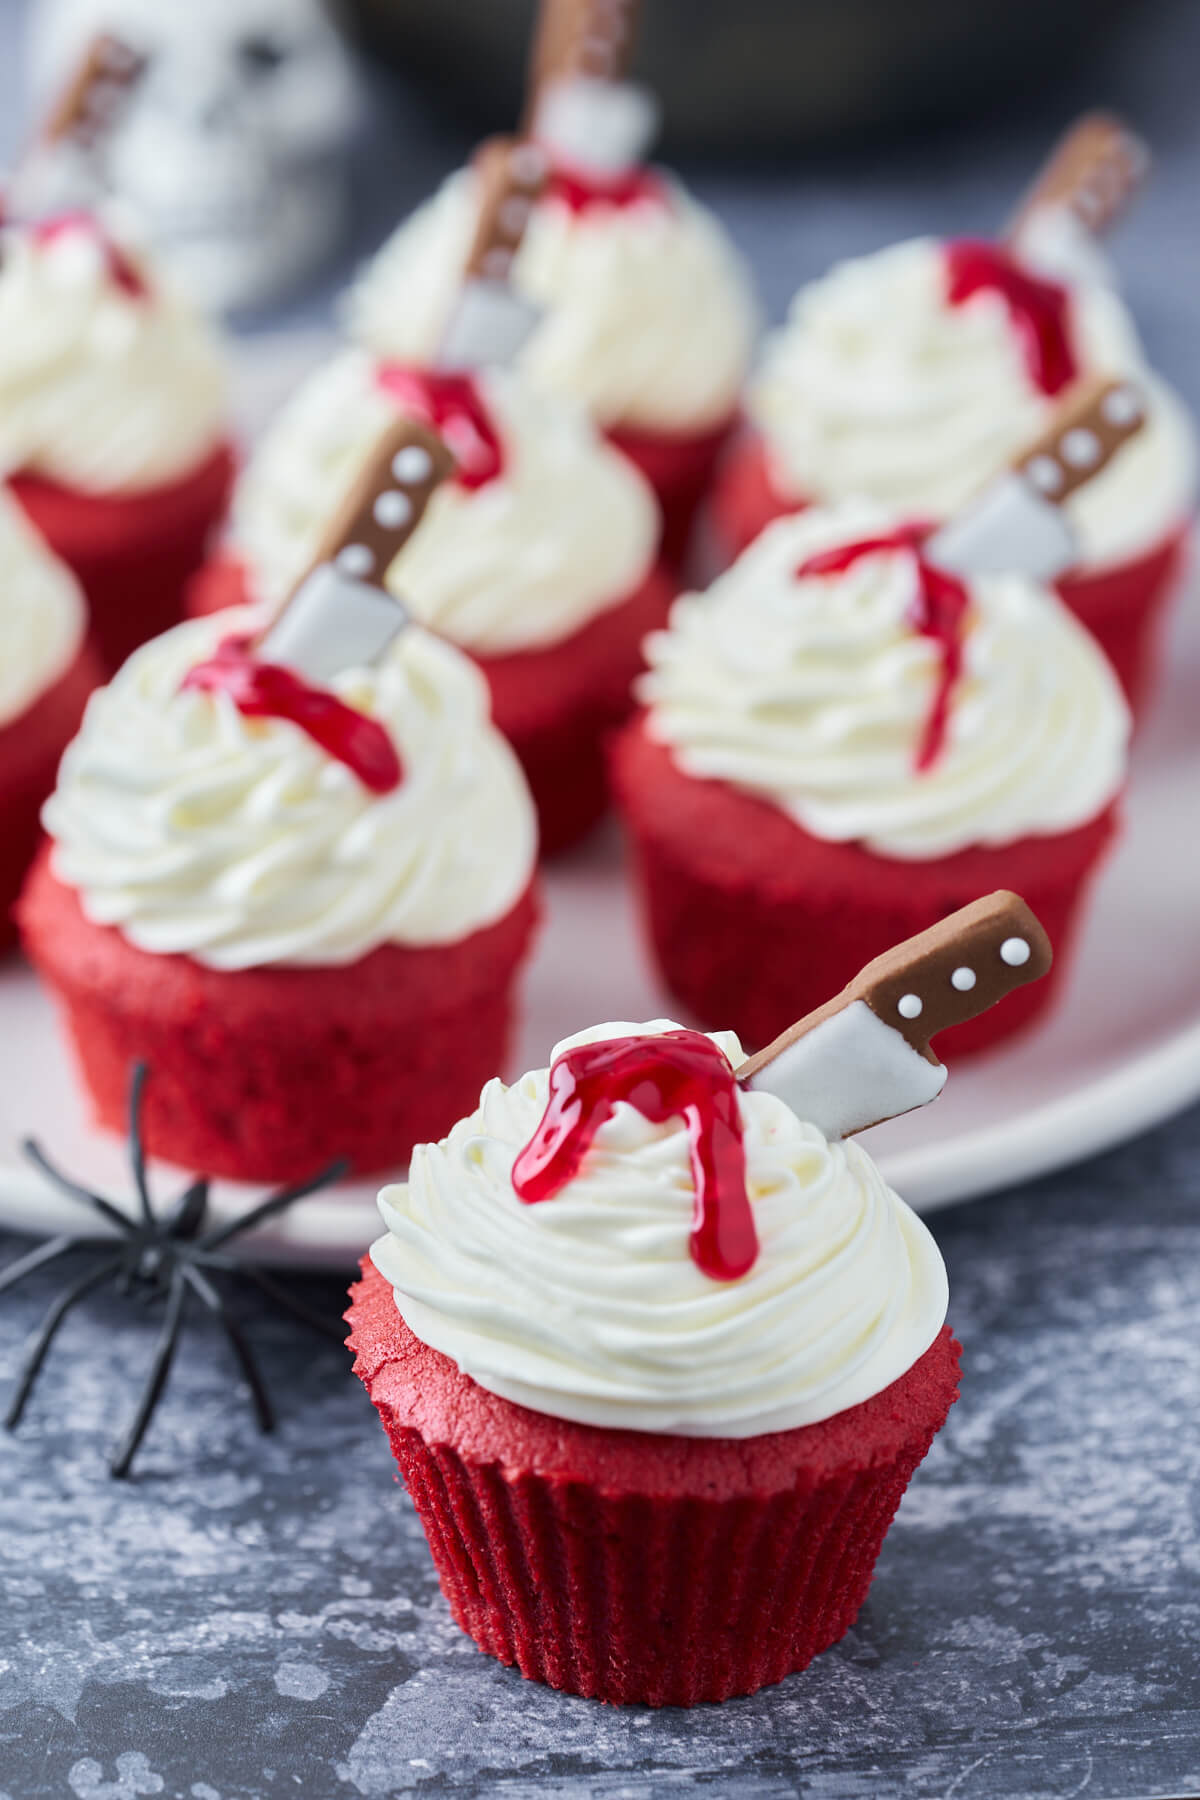 halloween kager i form af røde cupcakes med blod og kniv i cream cheese frosting